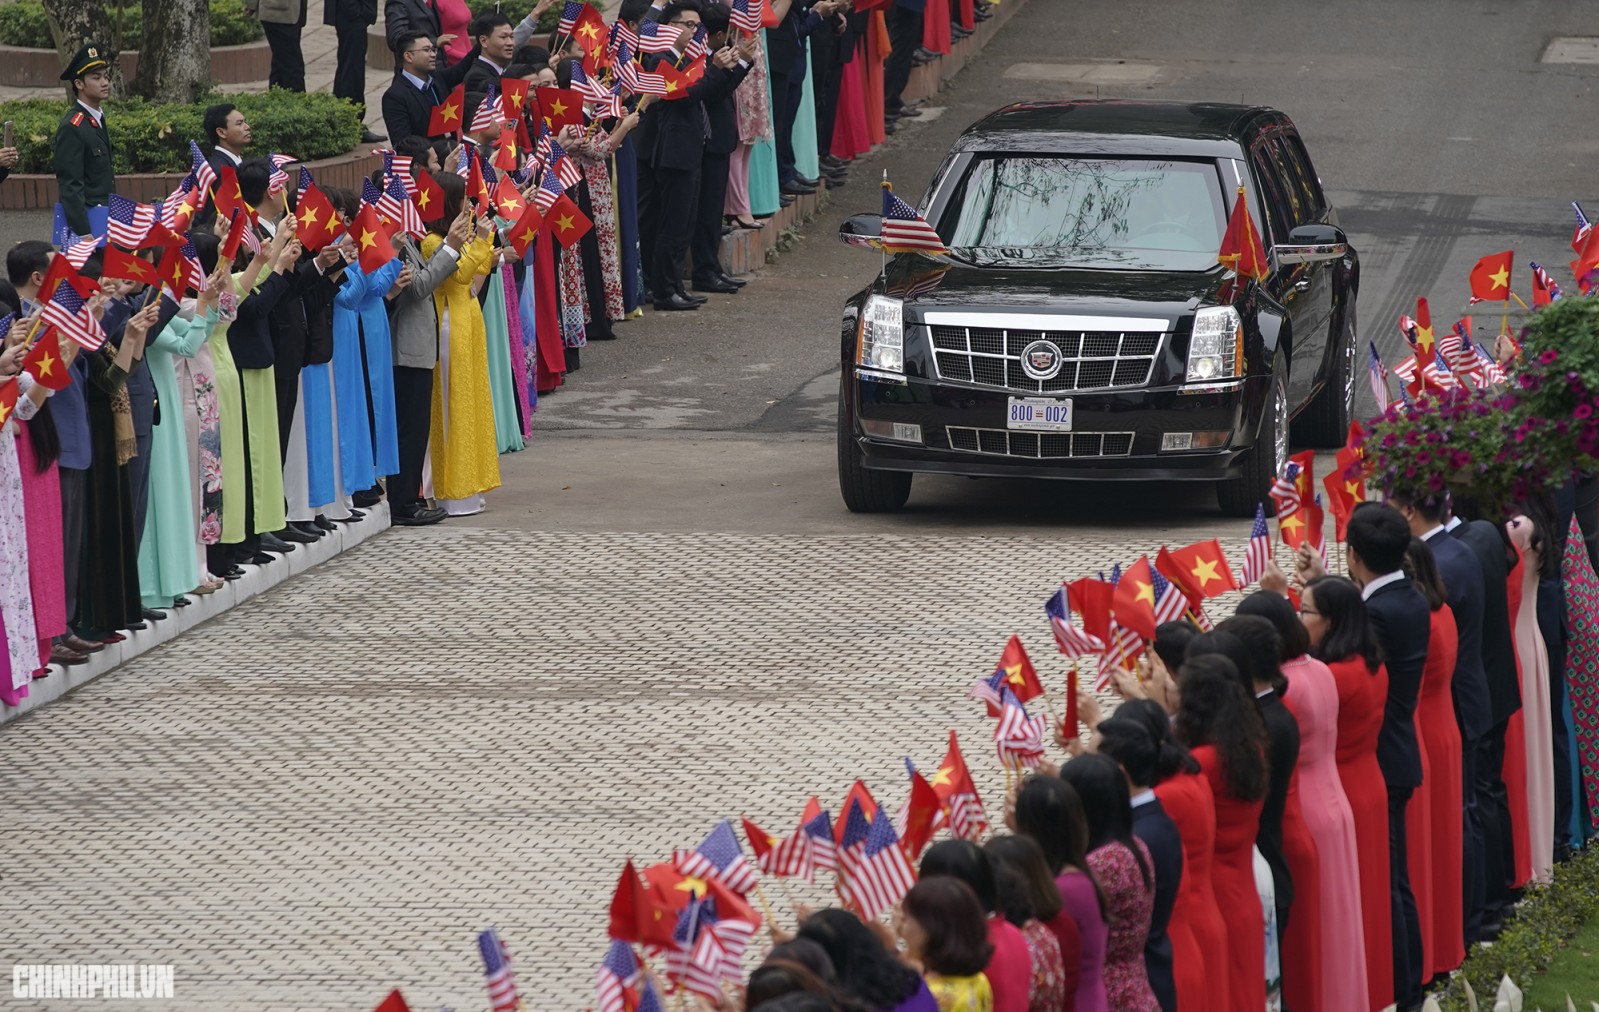 Đoàn xe chở Tổng thống Hoa Kỳ trên đường tiến vào Trụ sở Chính phủ.